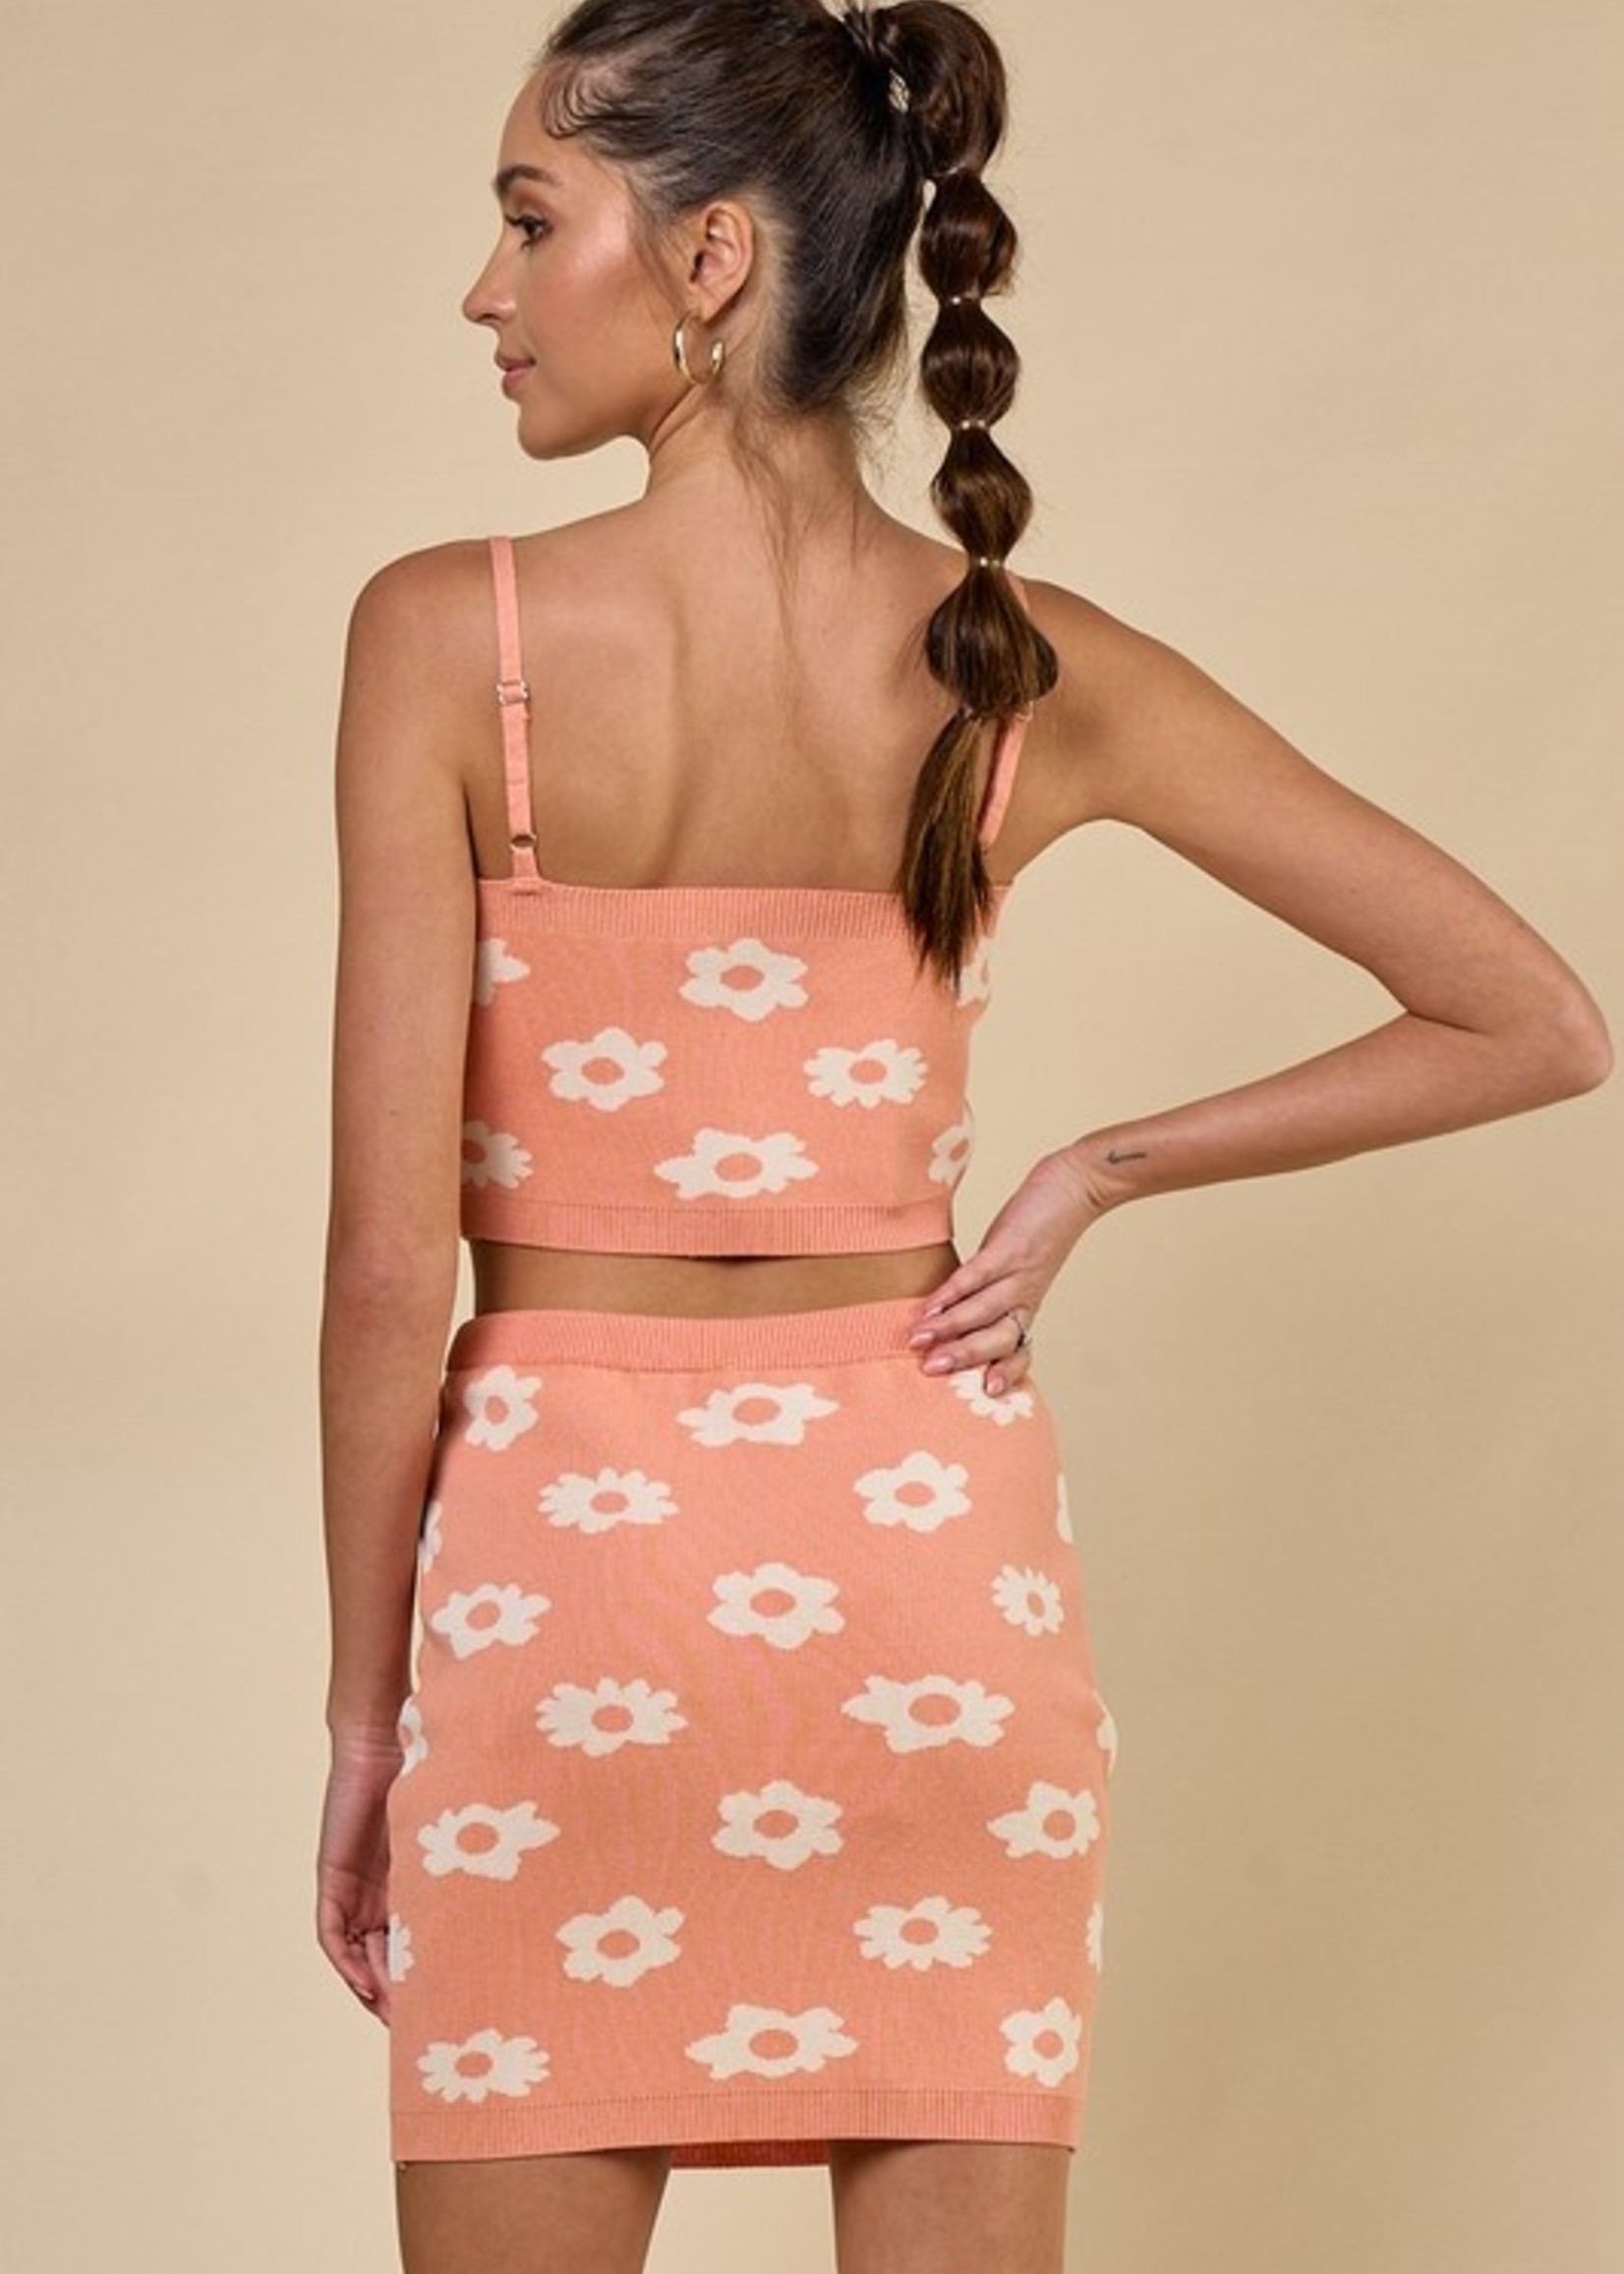 Knit Flowerl Skirt